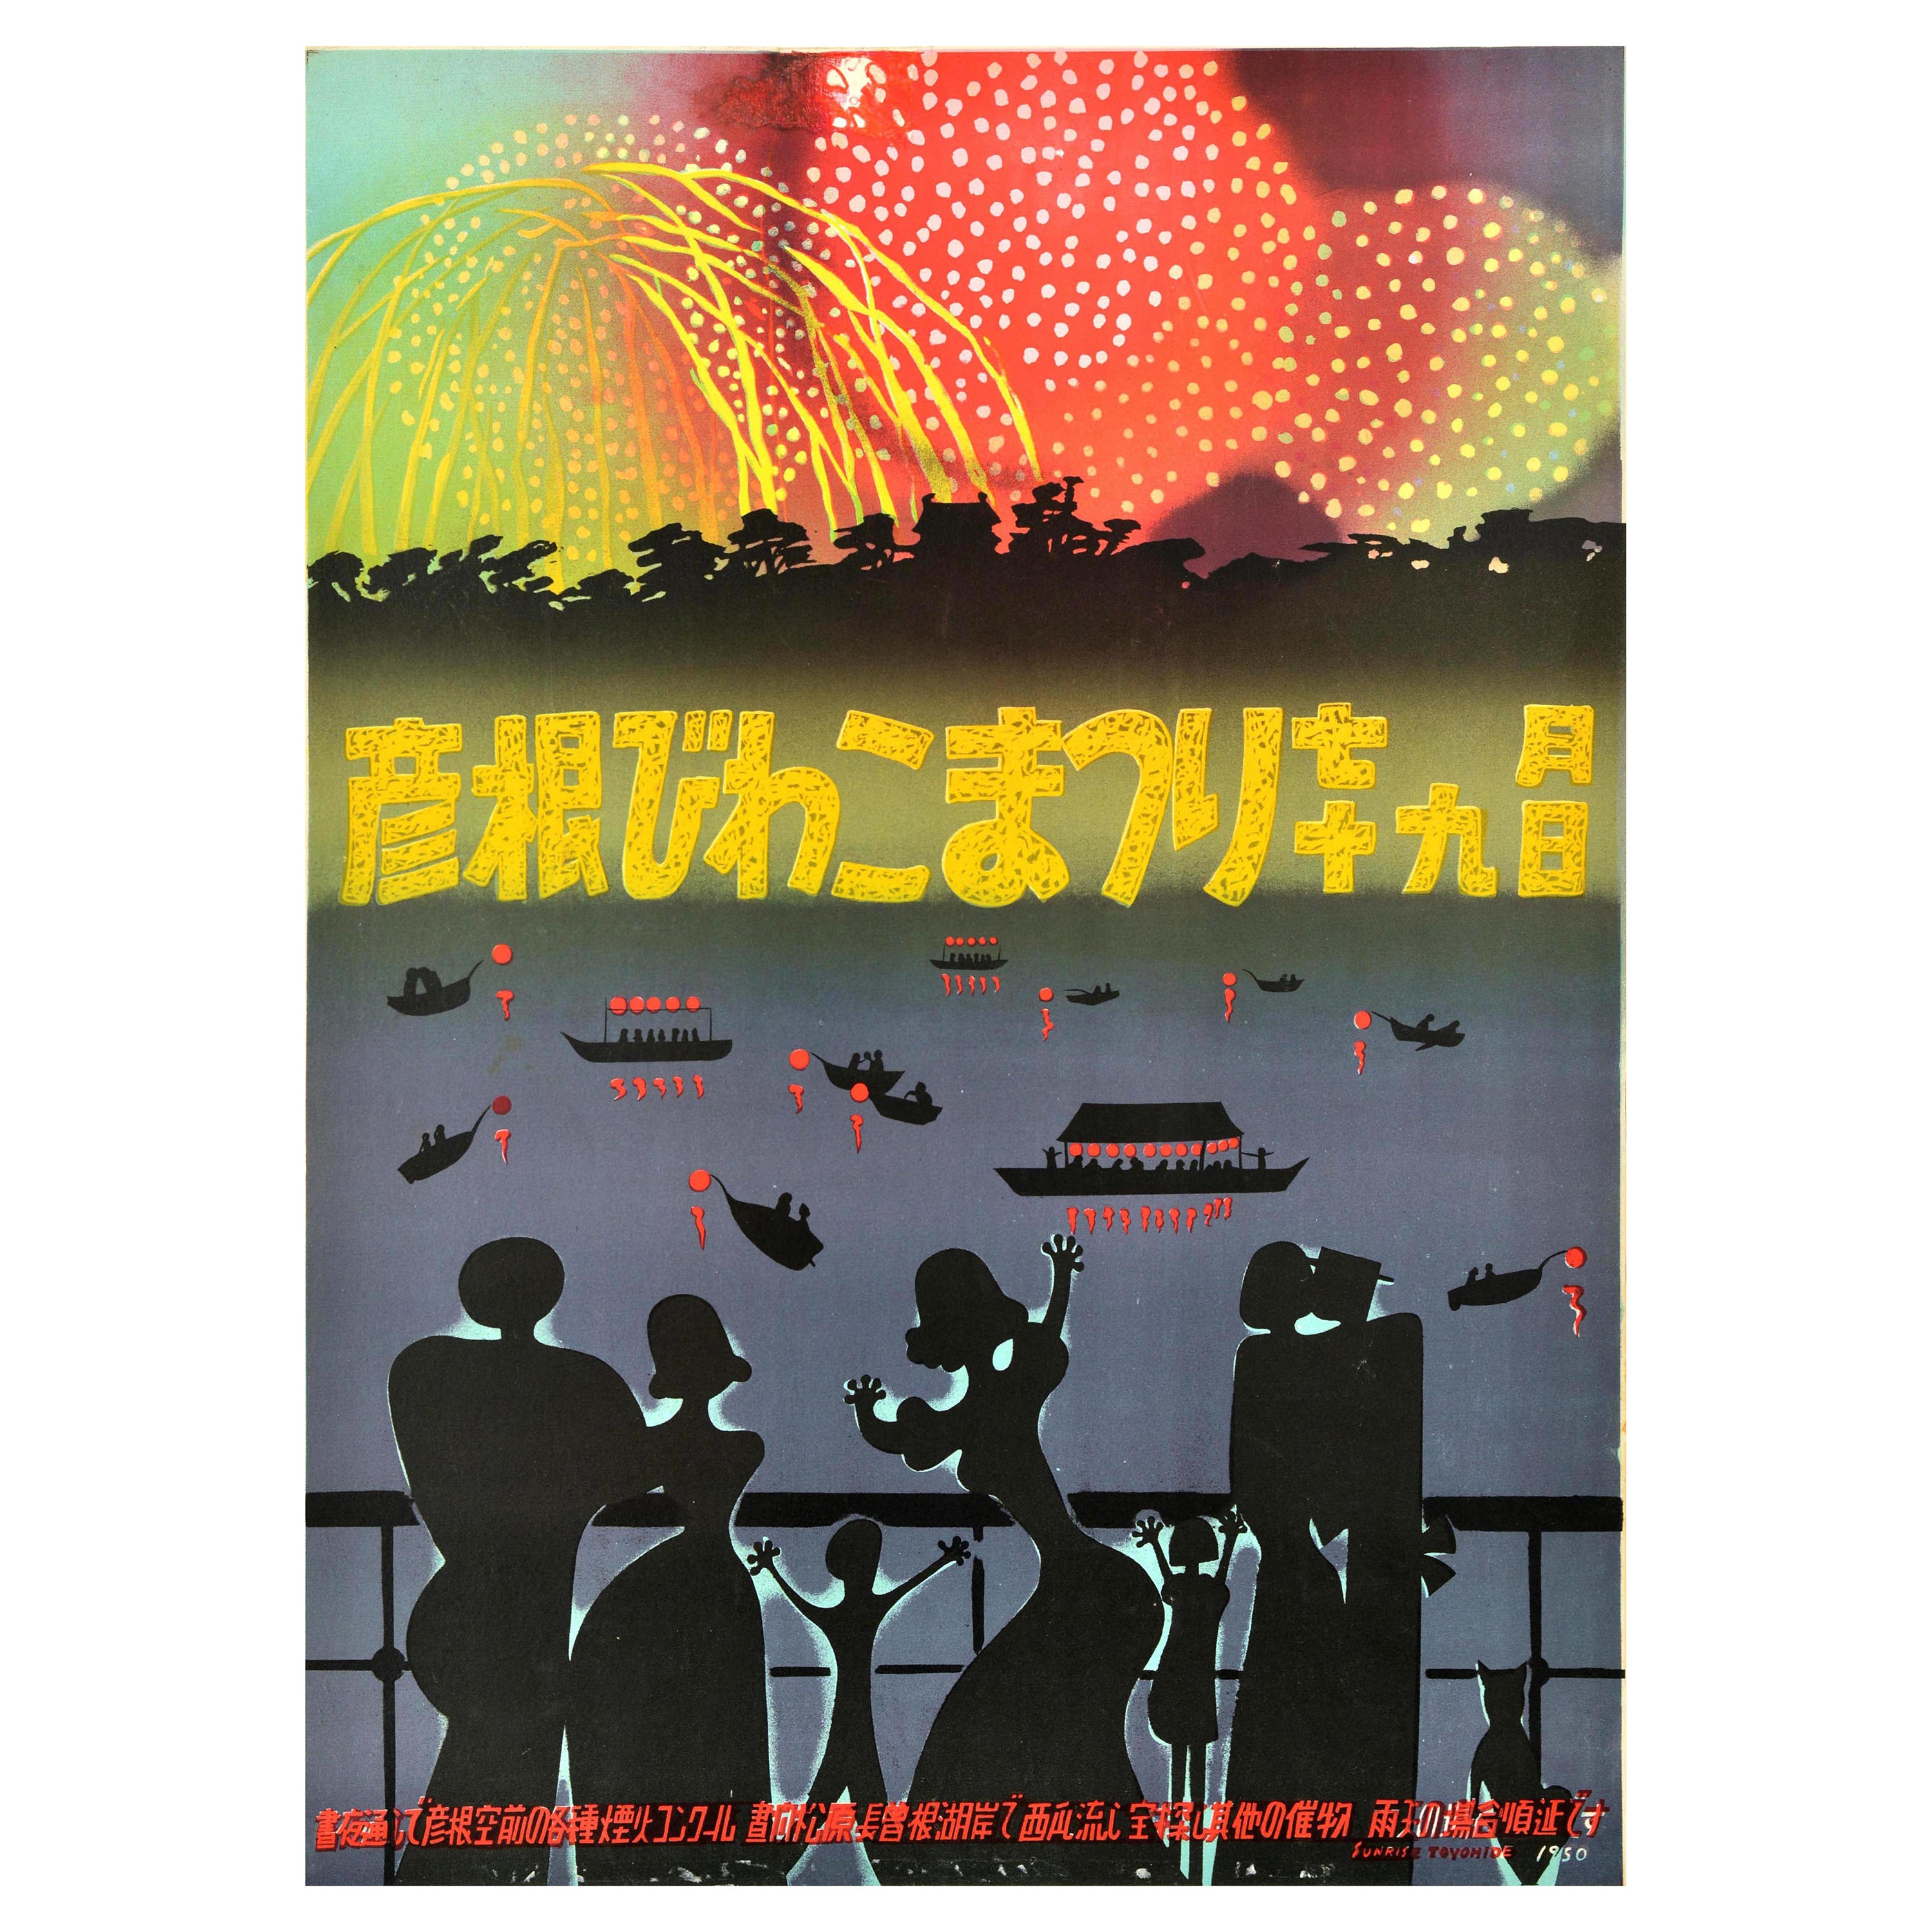 Original-Vintage-Reiseplakat Hikone Biwako Feuerwerk Festival Japan See Biwa im Angebot